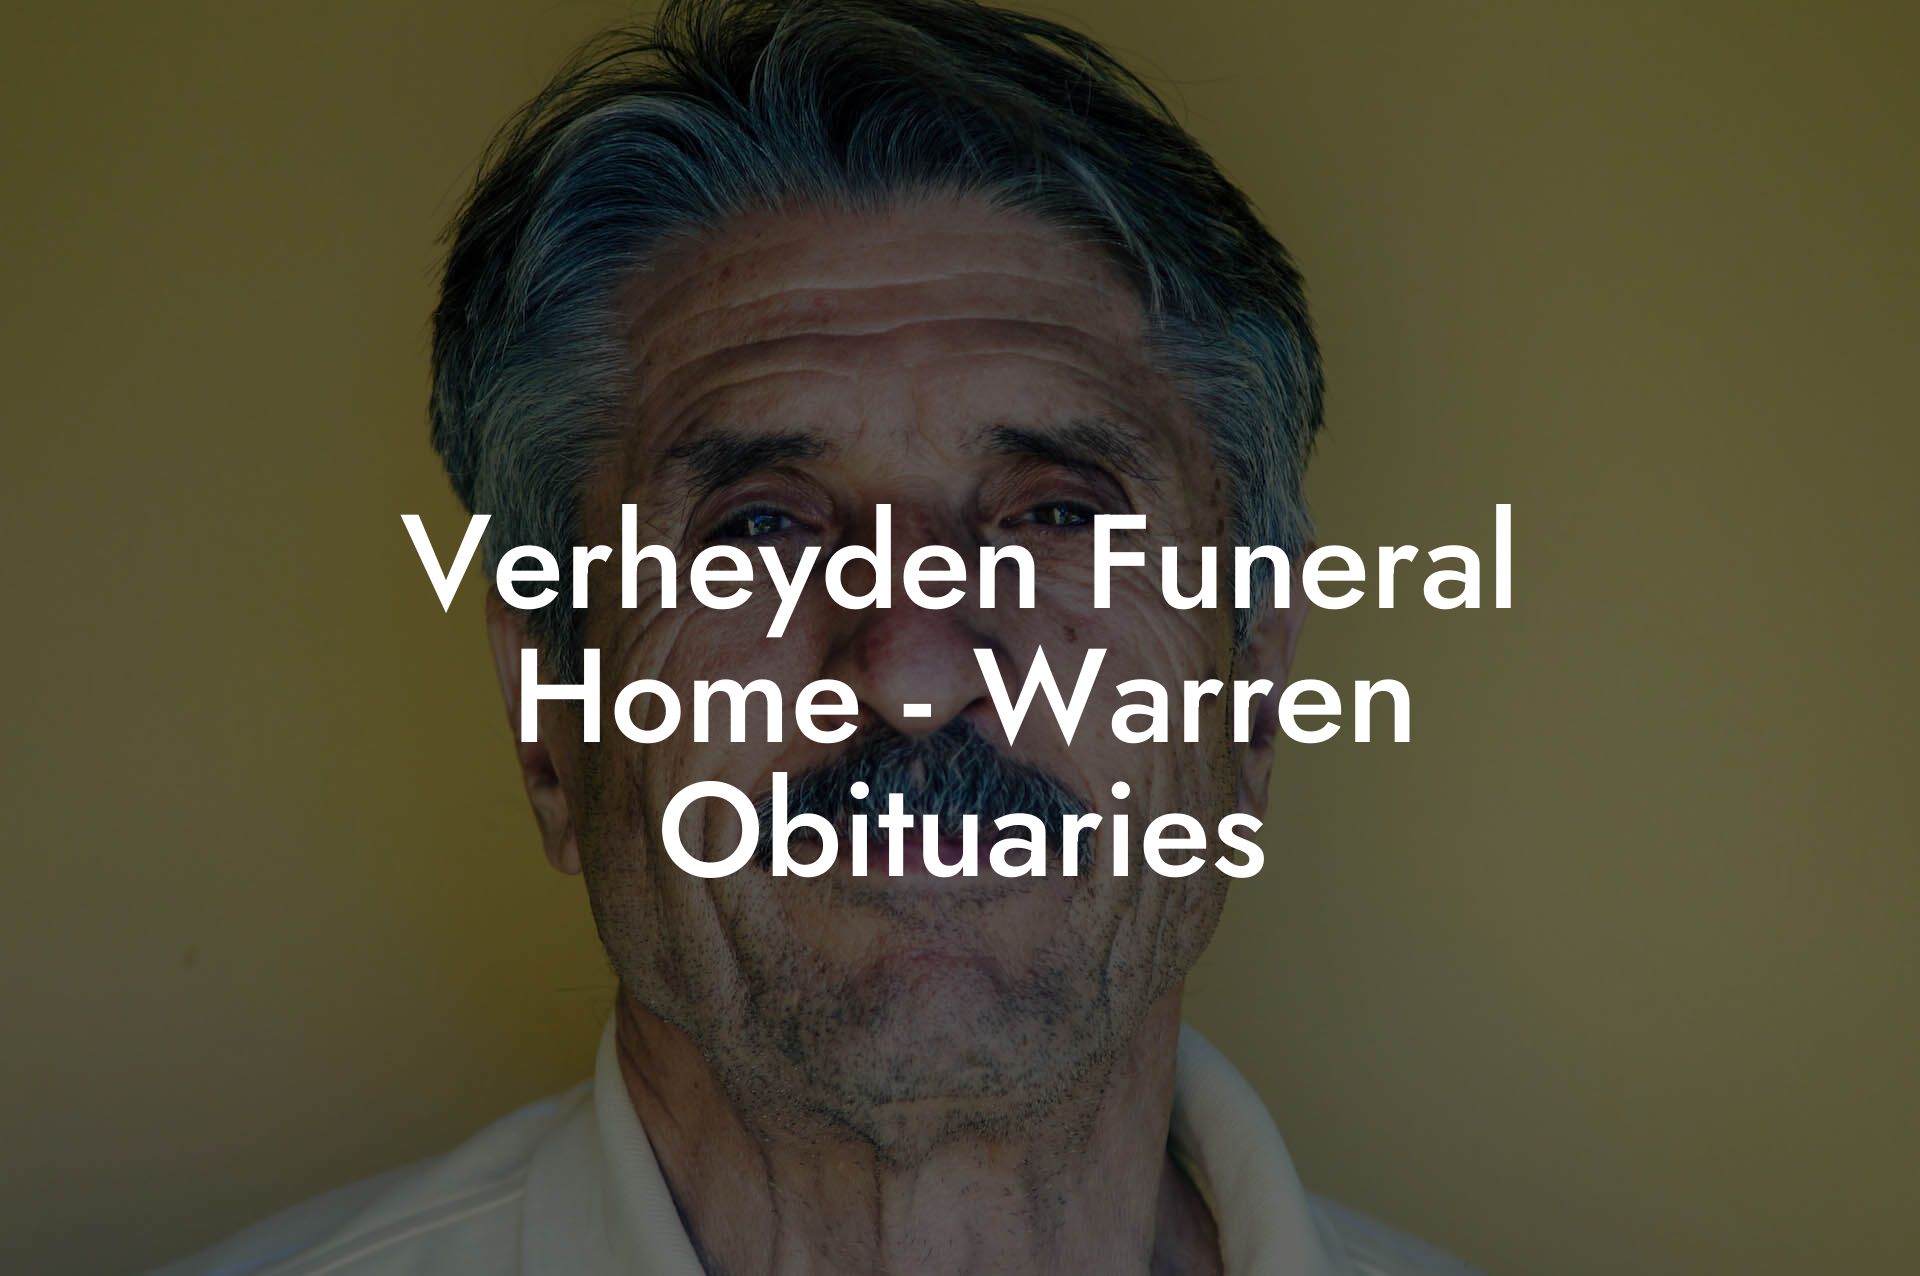 Verheyden Funeral Home - Warren Obituaries